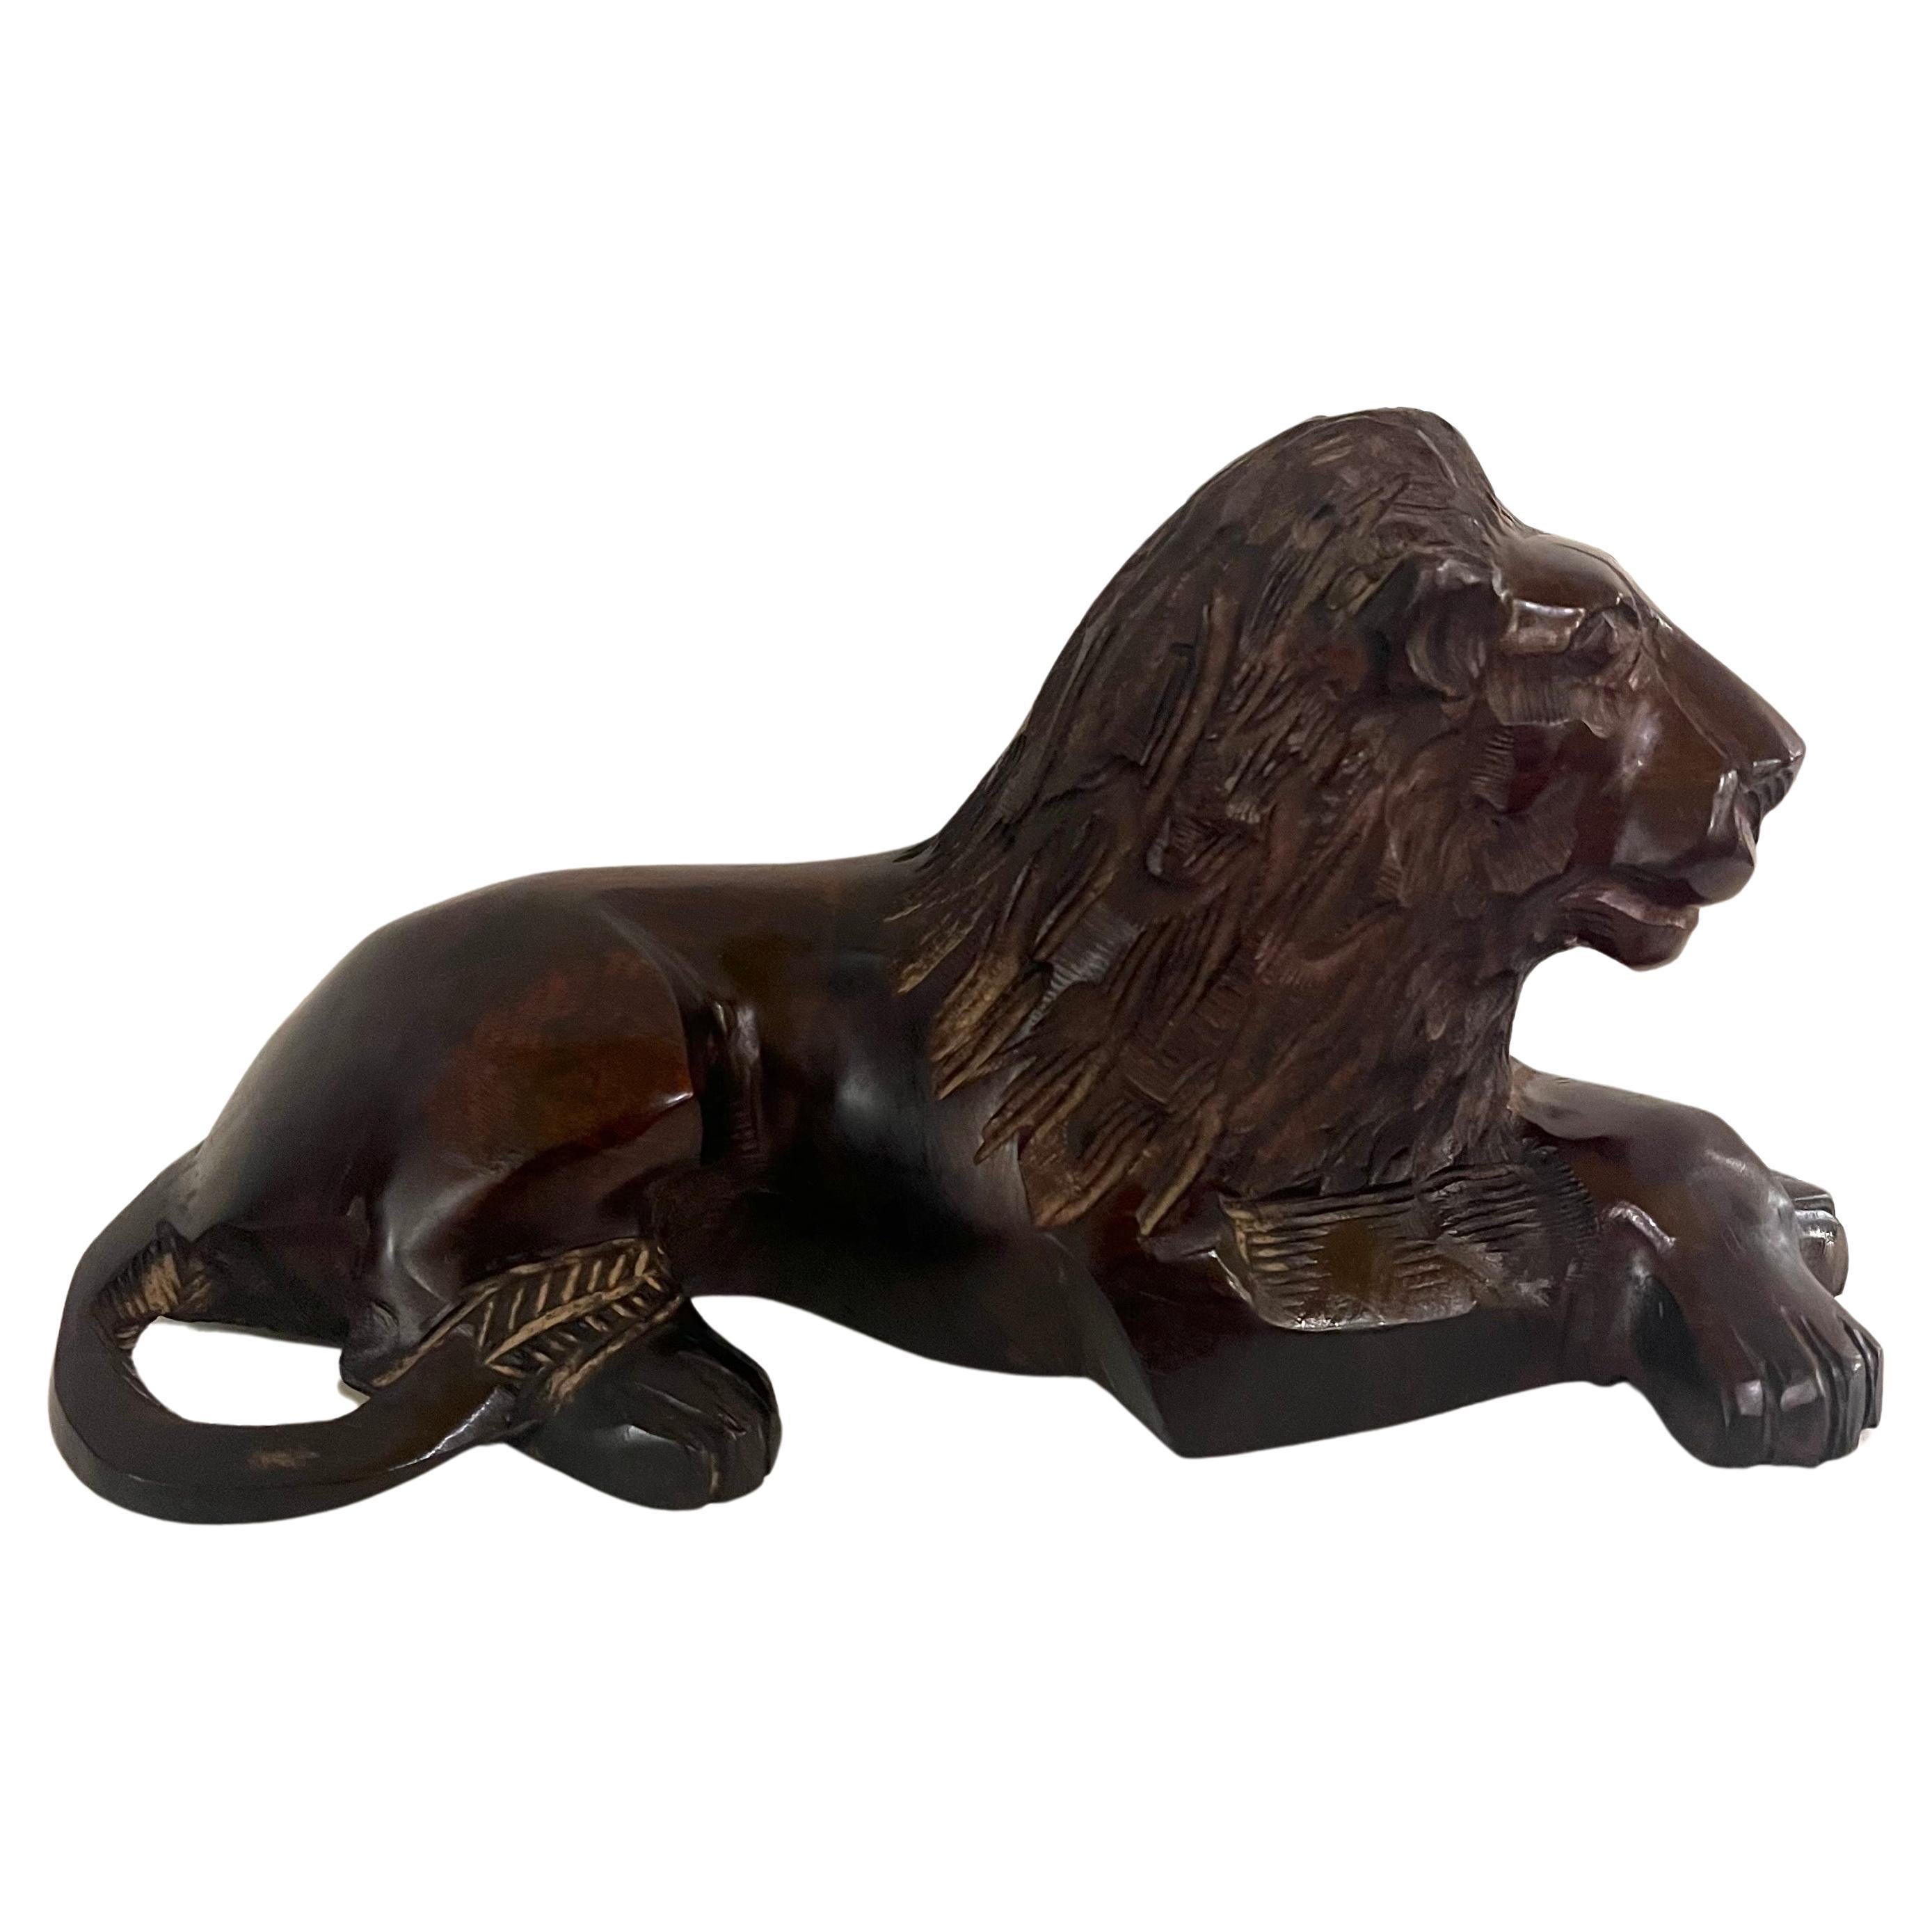 Schöne handgeschnitzte excotische Löwen-Skulptur aus Eisenholz